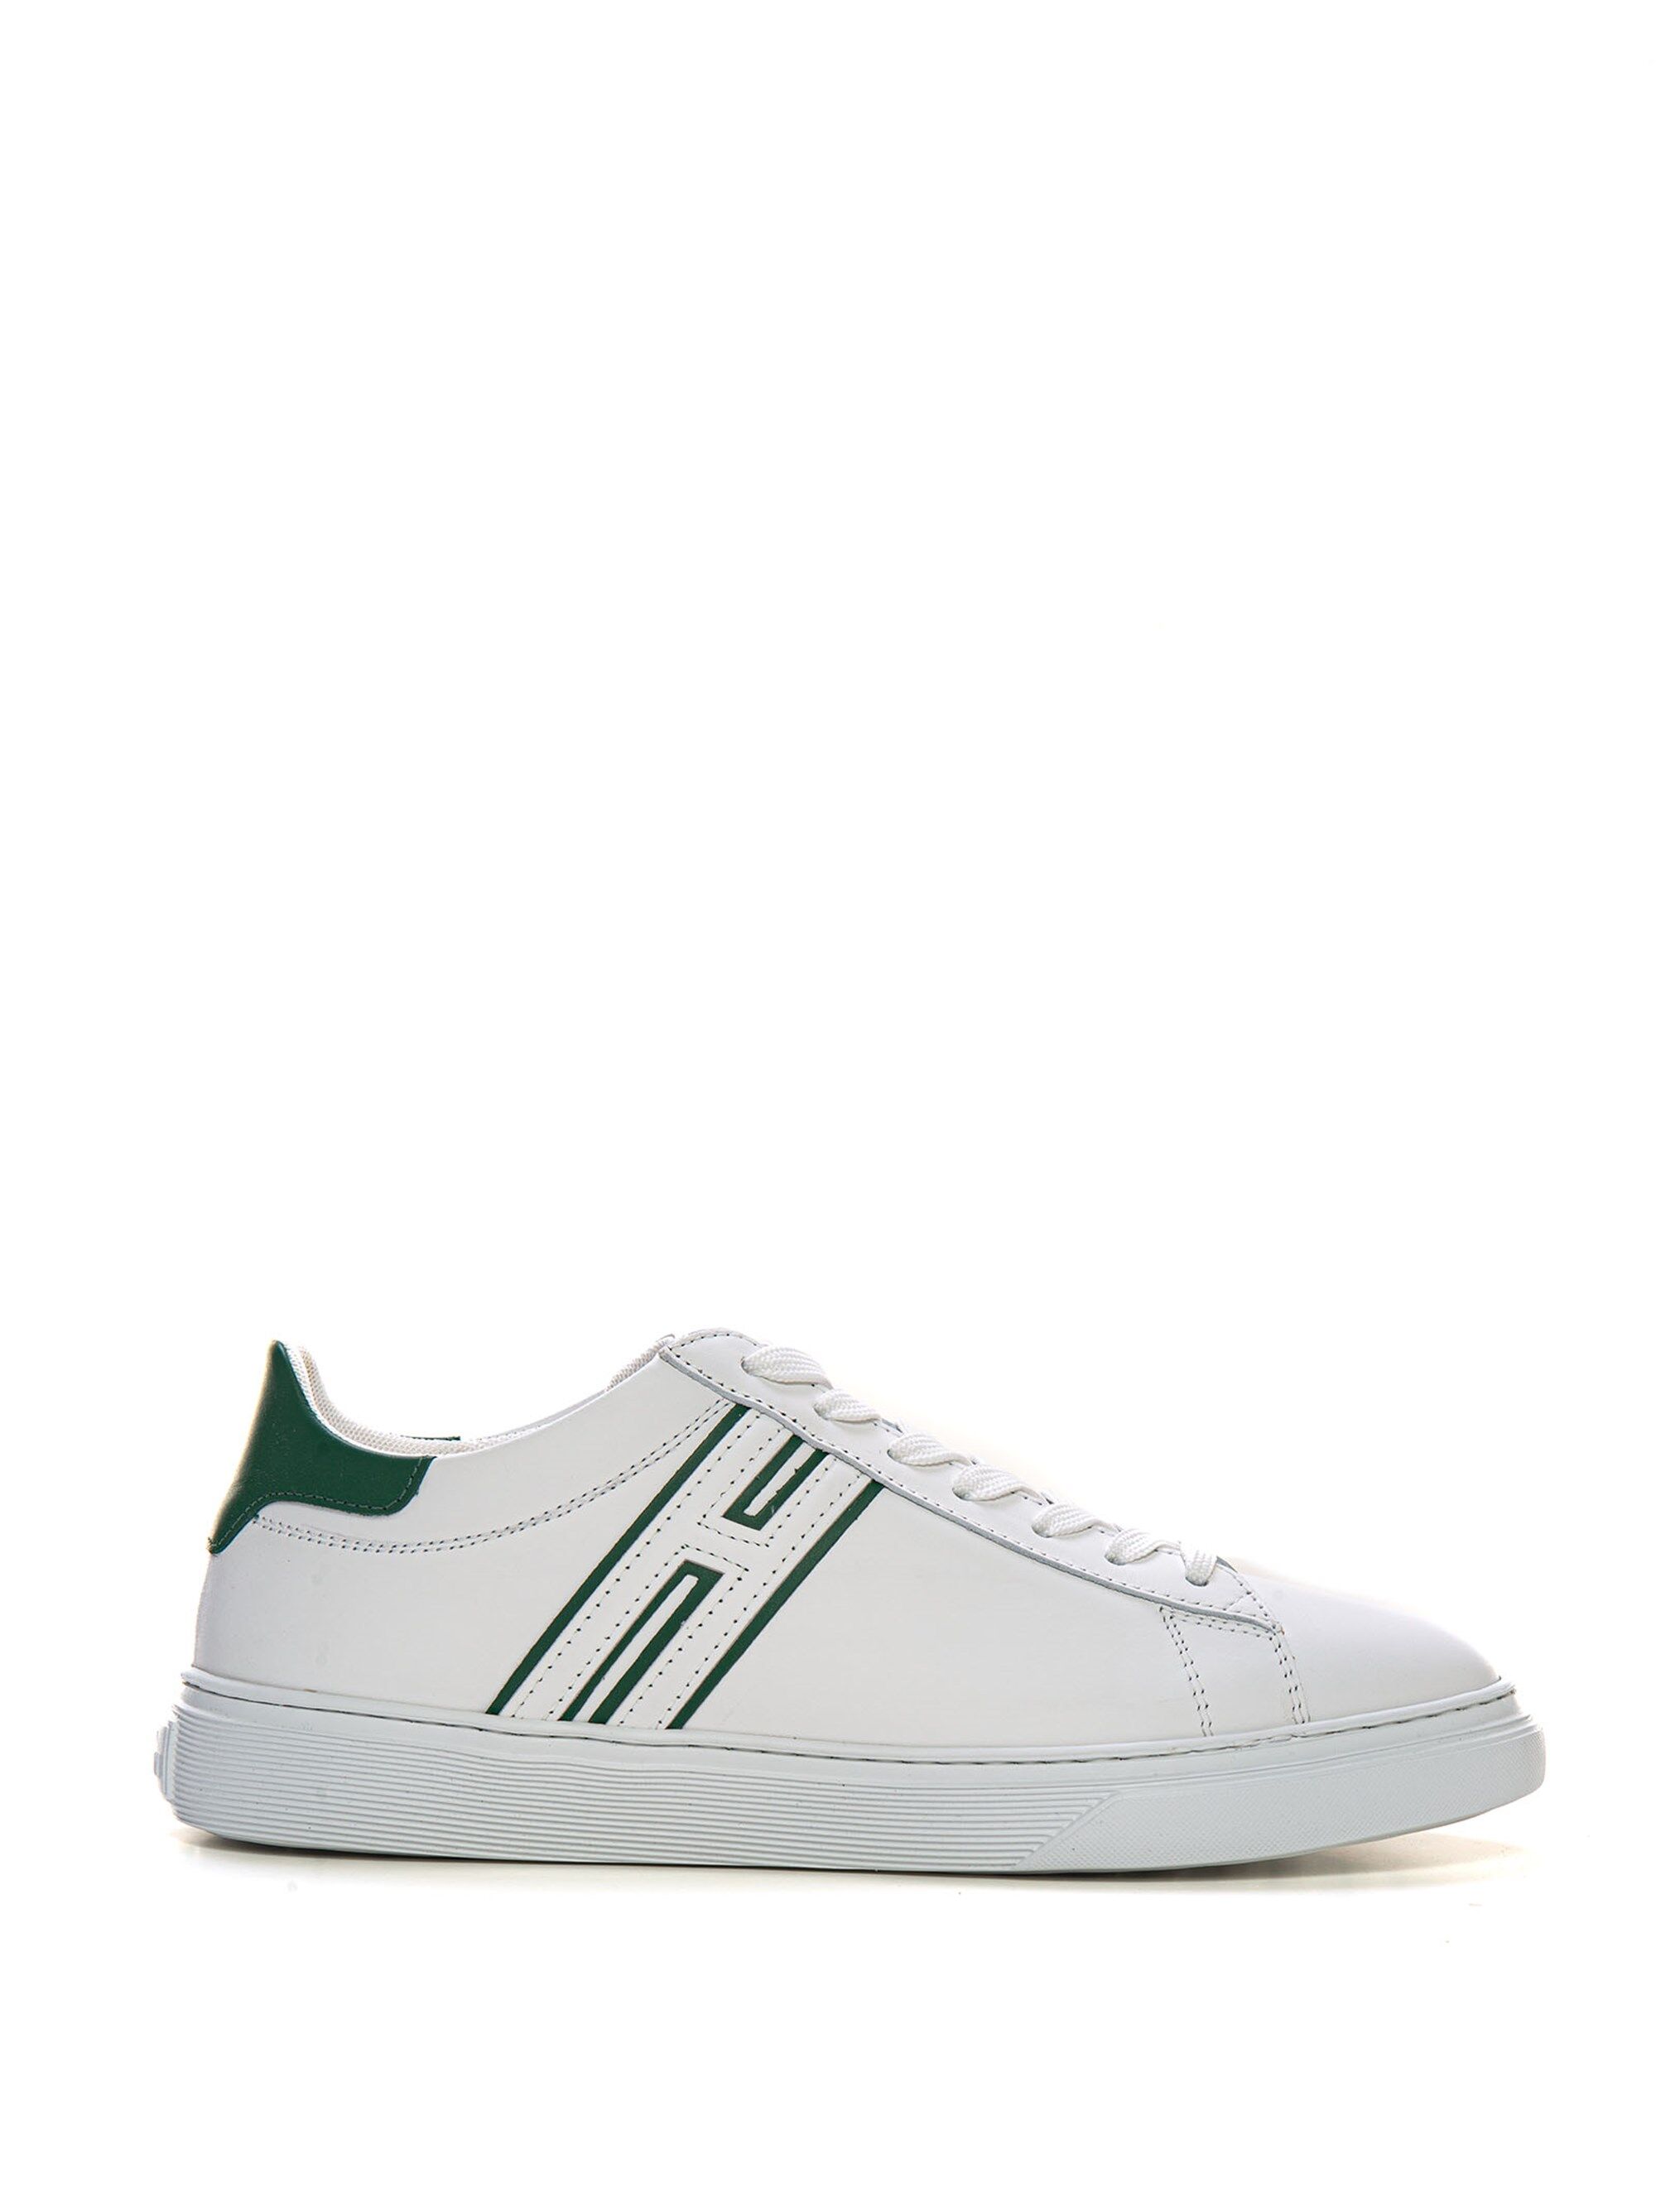 Hogan Sneakers in pelle con lacci H365 Bianco-verde Uomo 9